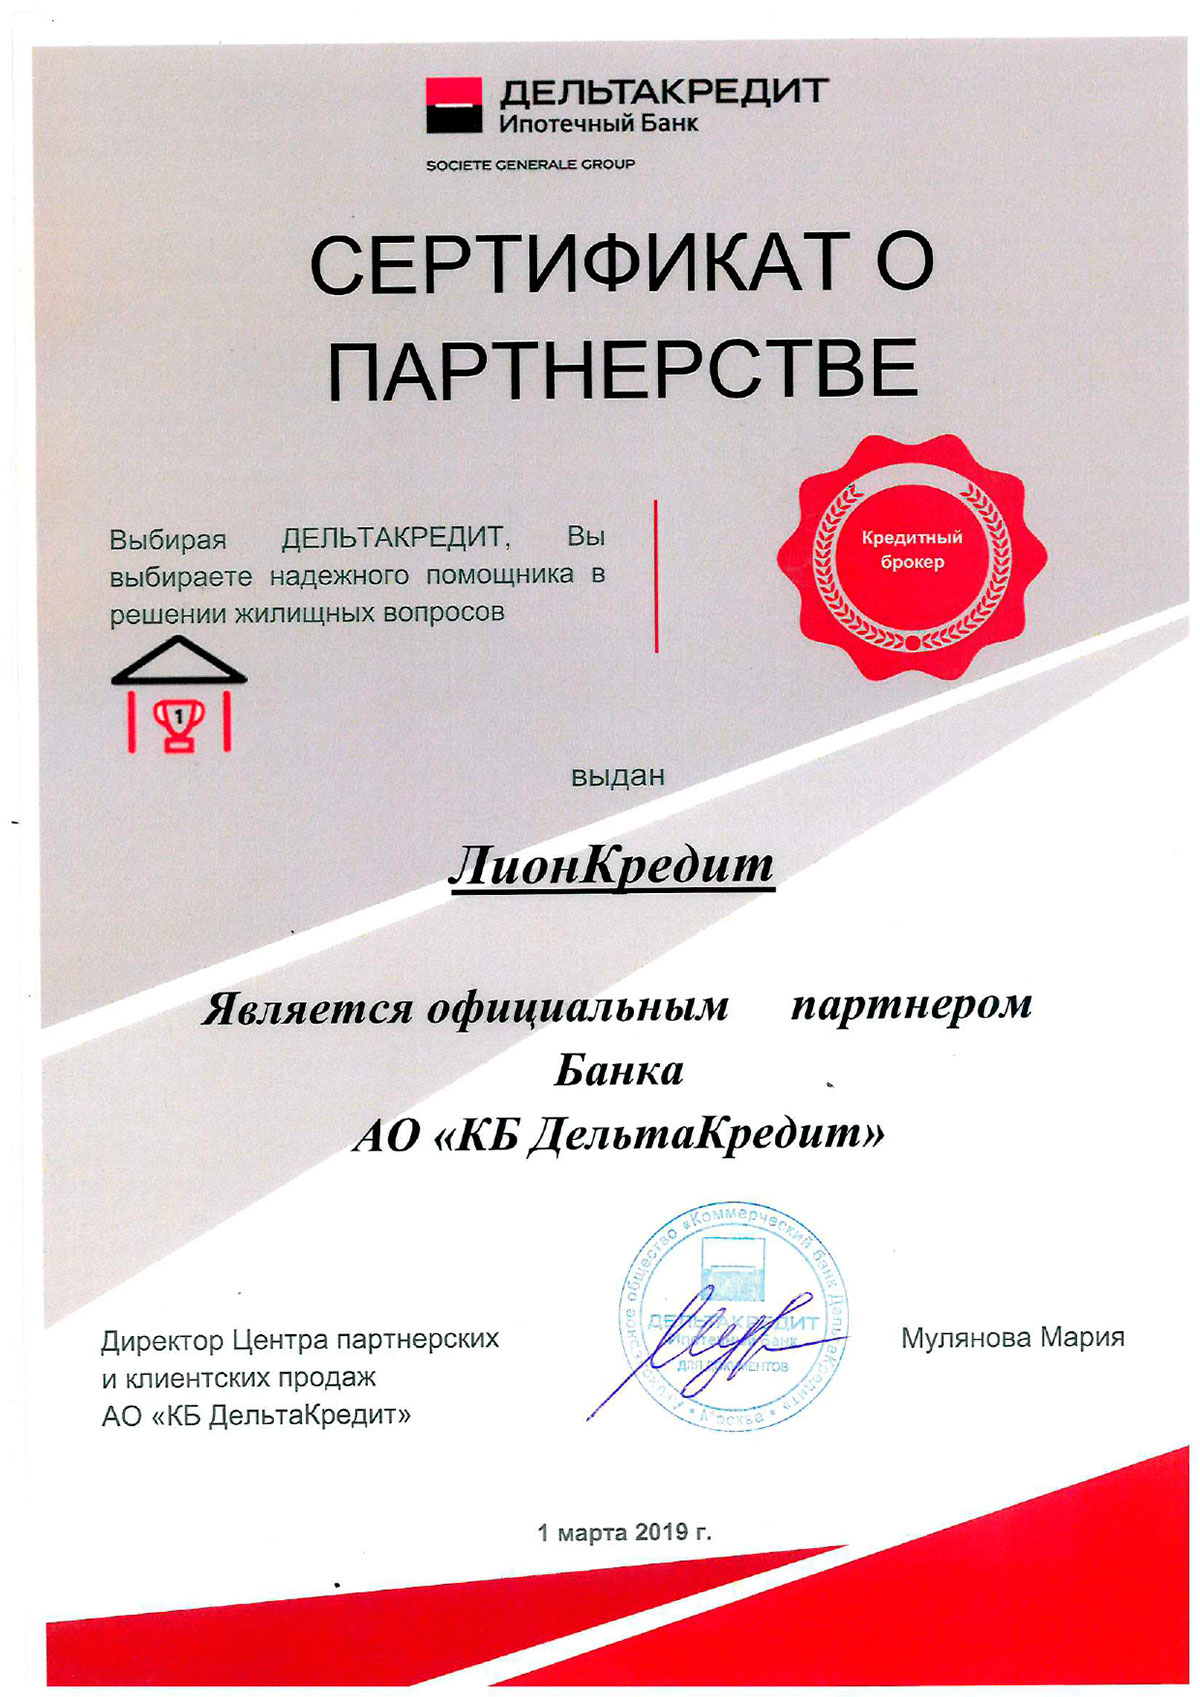 Сертификат о партнерстве Дельта